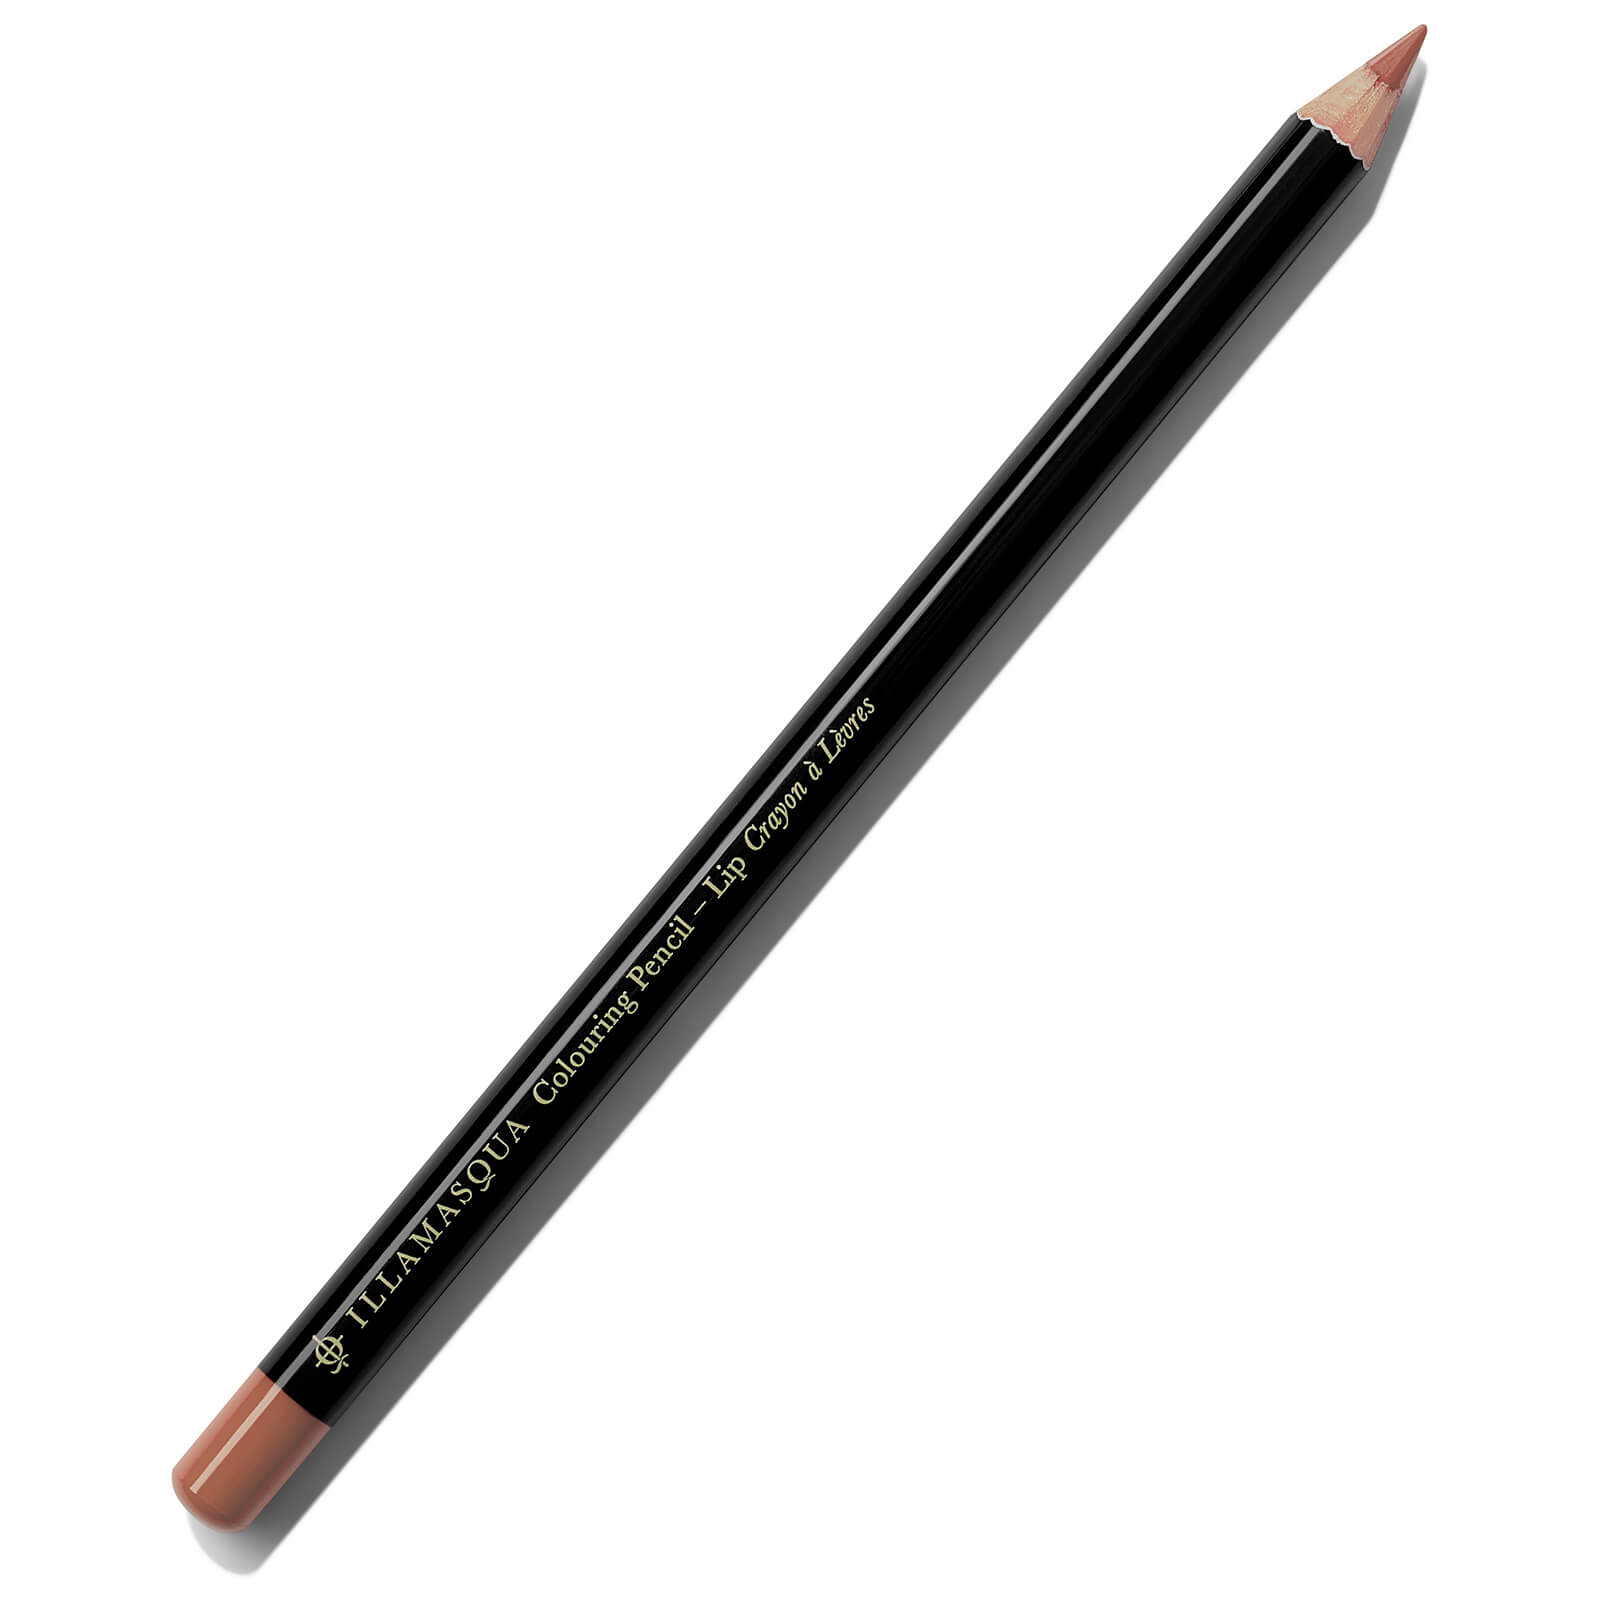 Illamasqua Colouring Lip Pencil 1.4g (Various Shades) - Raw